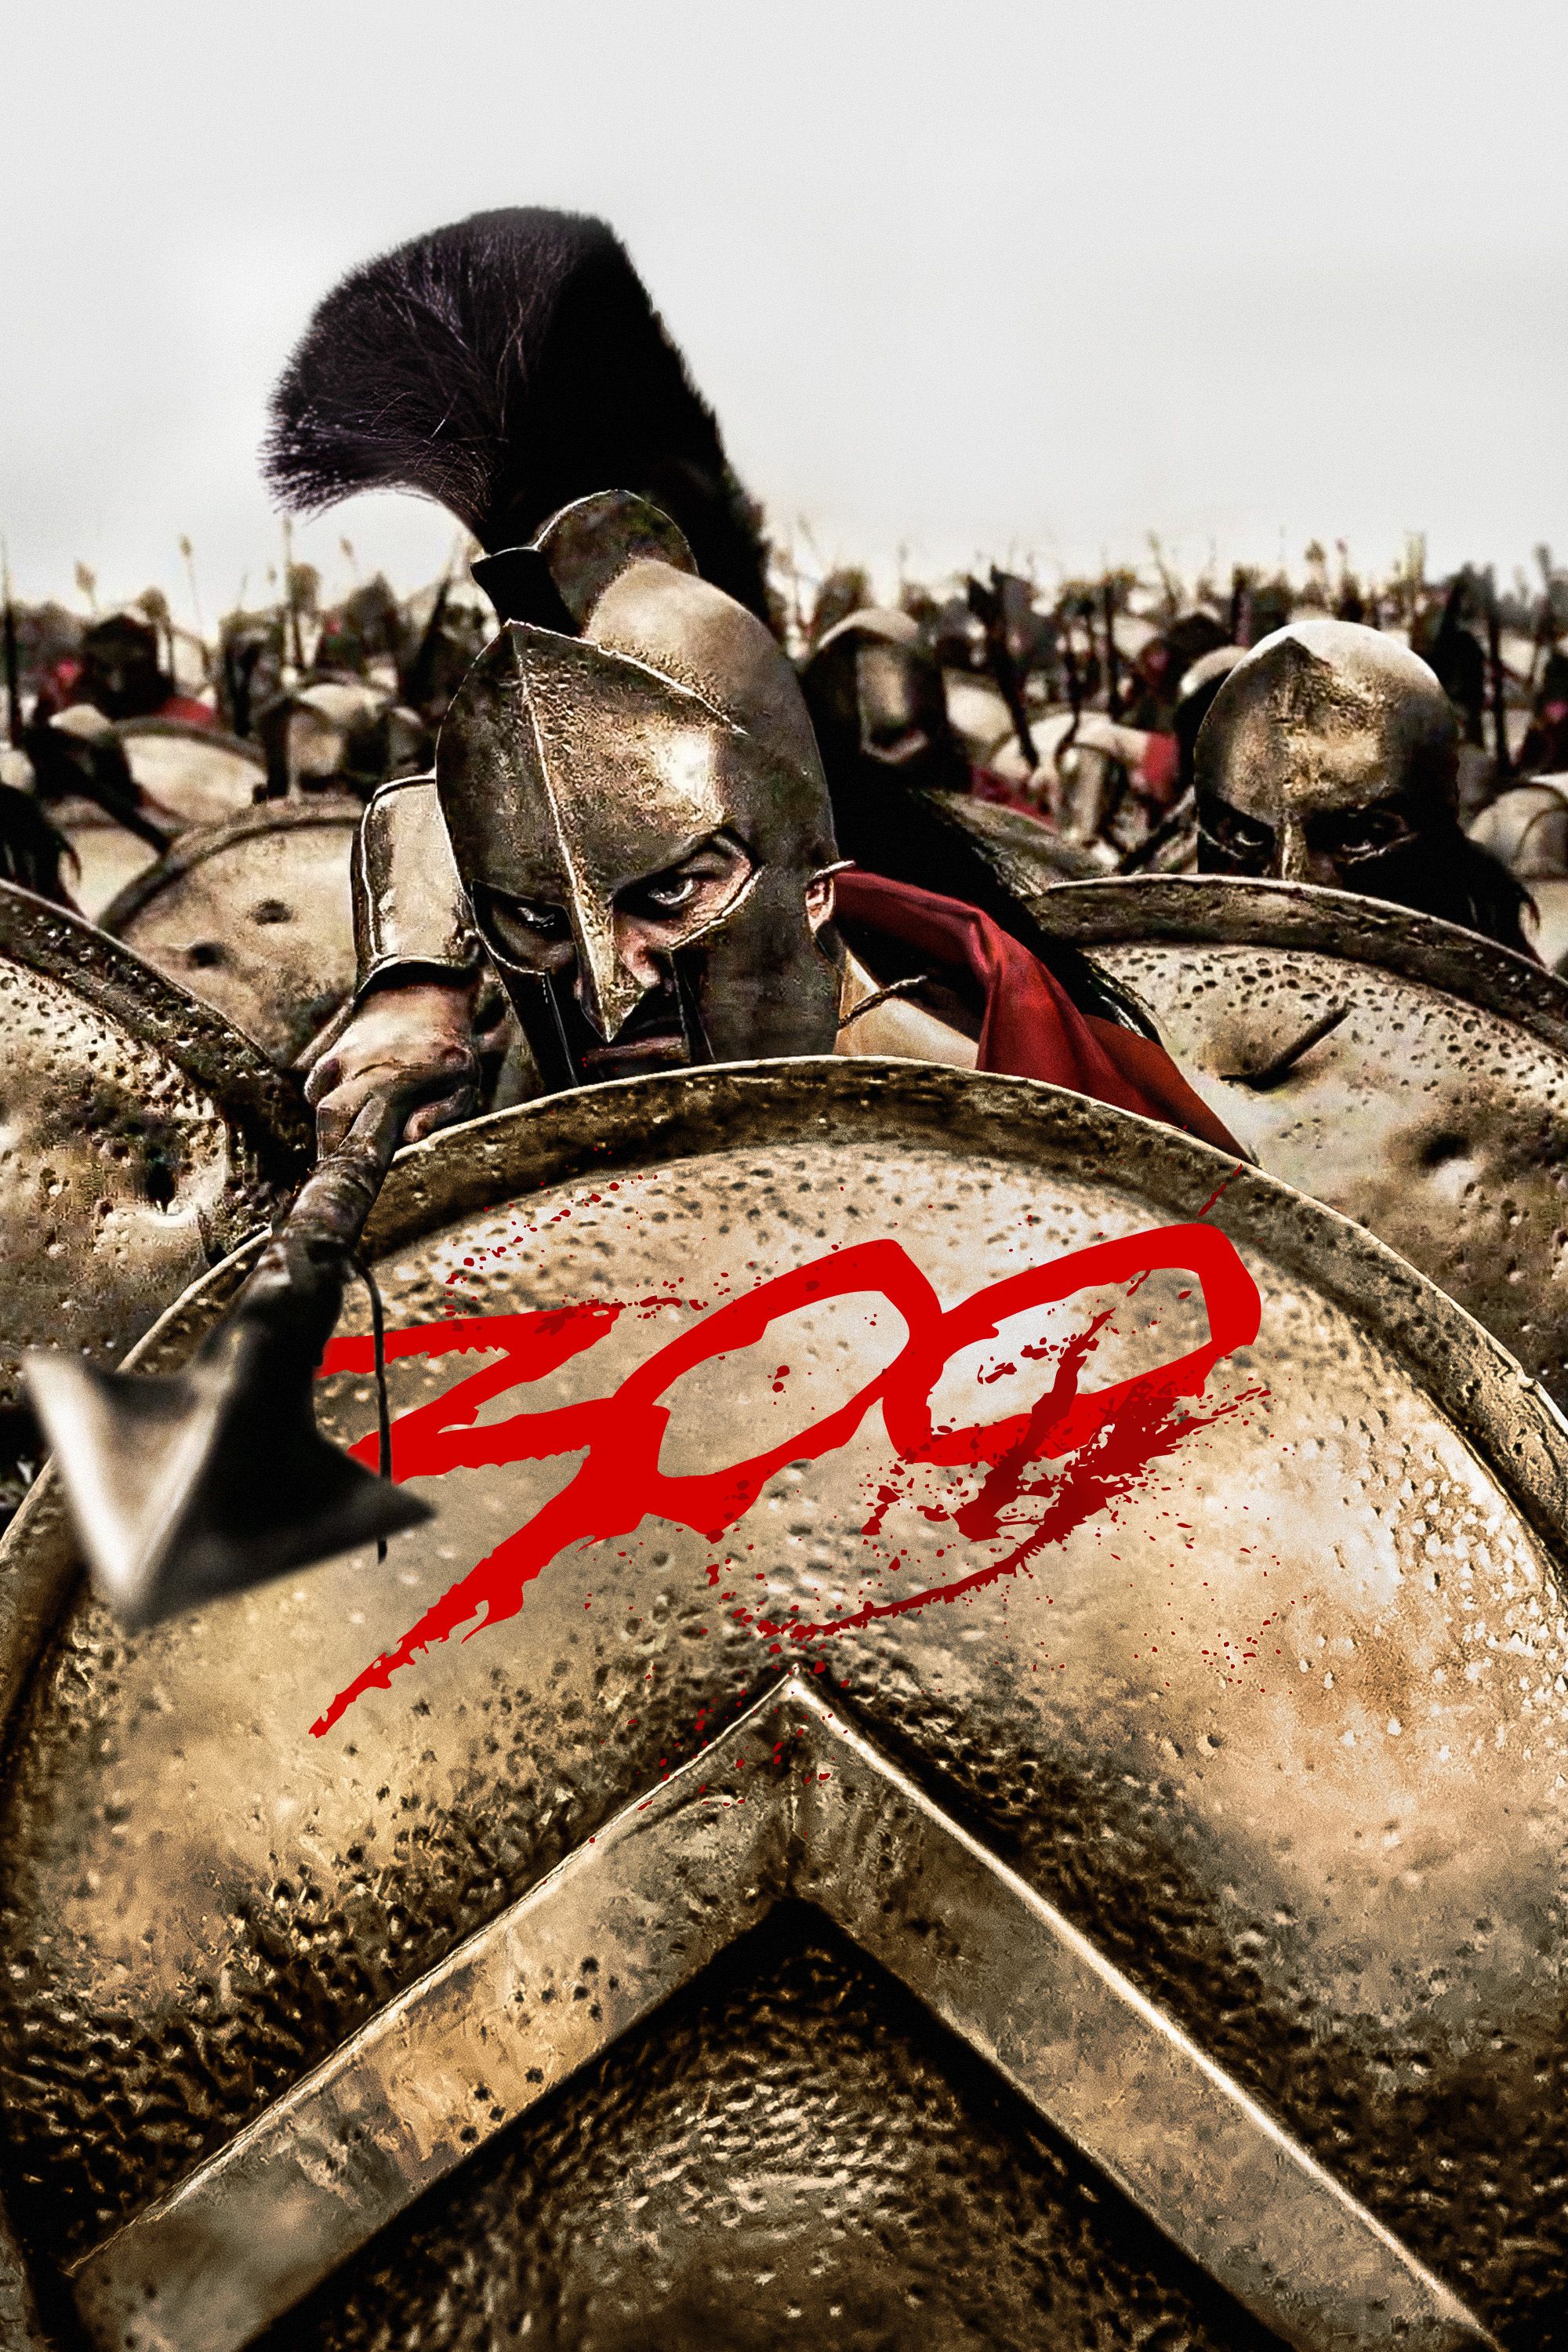 300, Full Movie